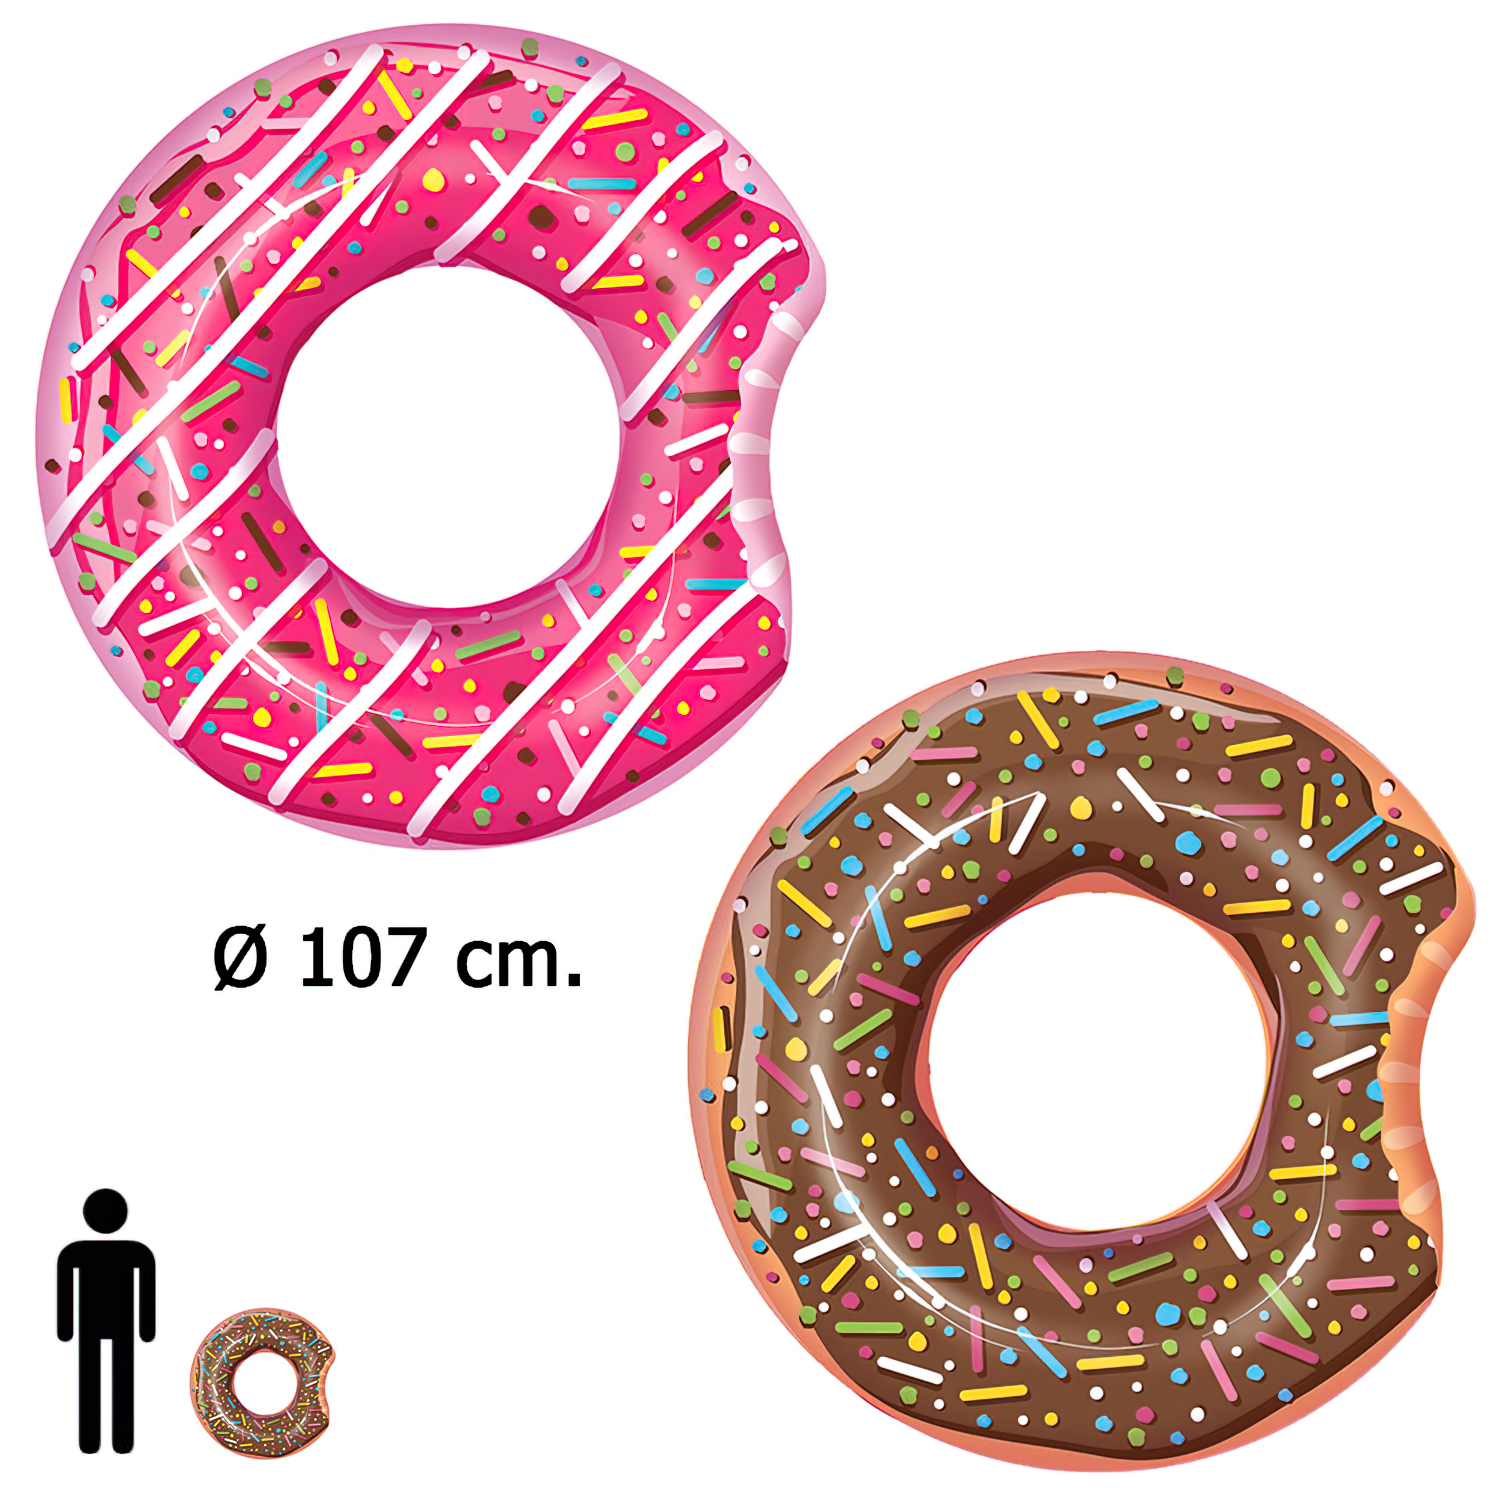 Flotador Donut Gigante Rosa / Chocolate Ø 107 cm.